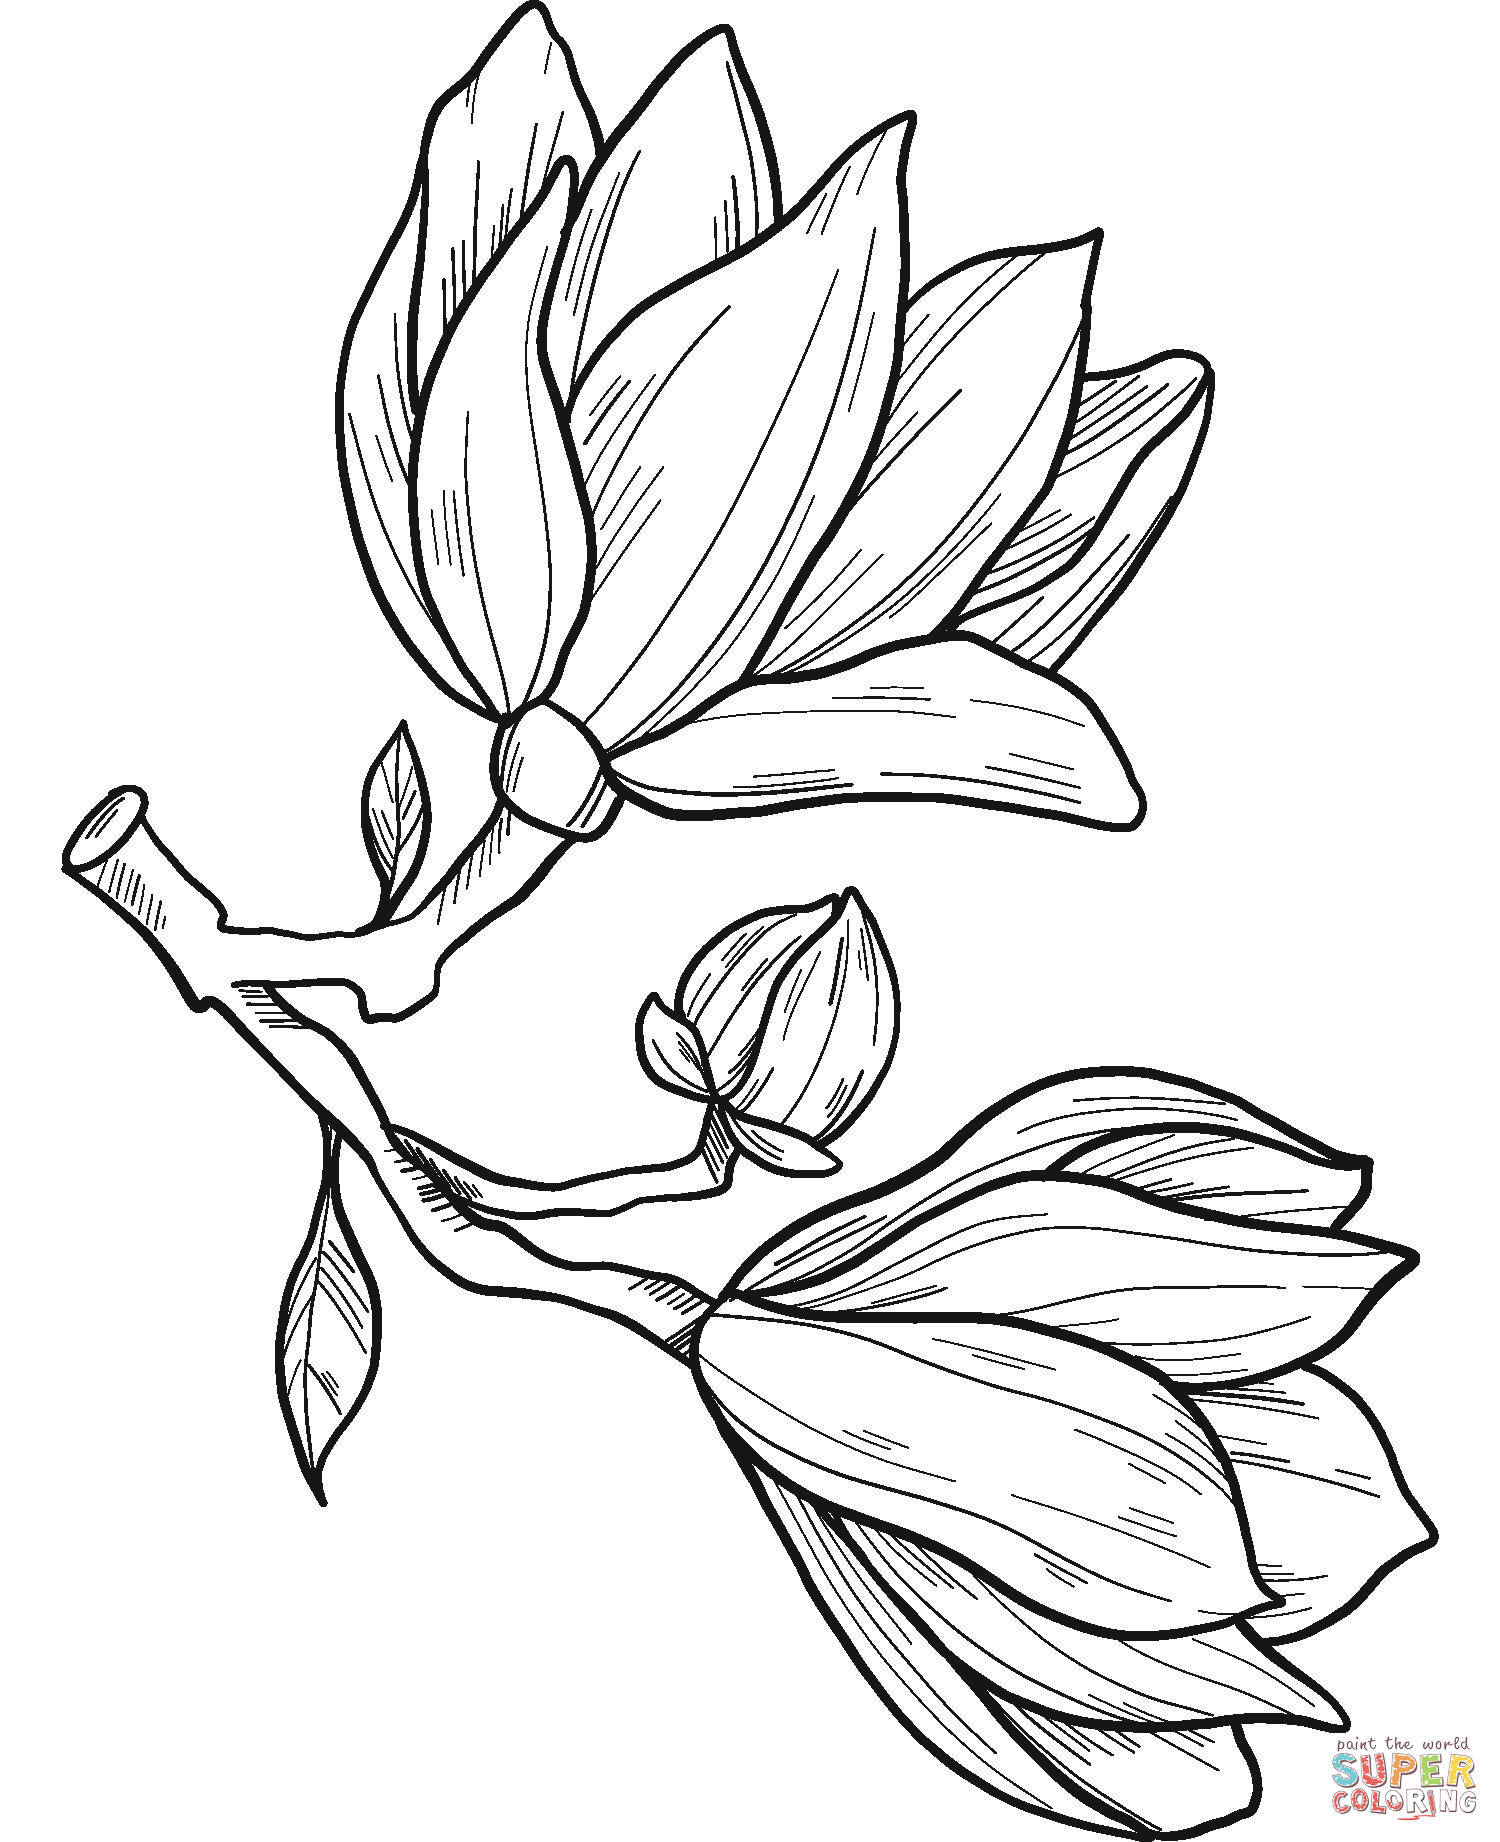 Magnoliabloemen van Magnolia